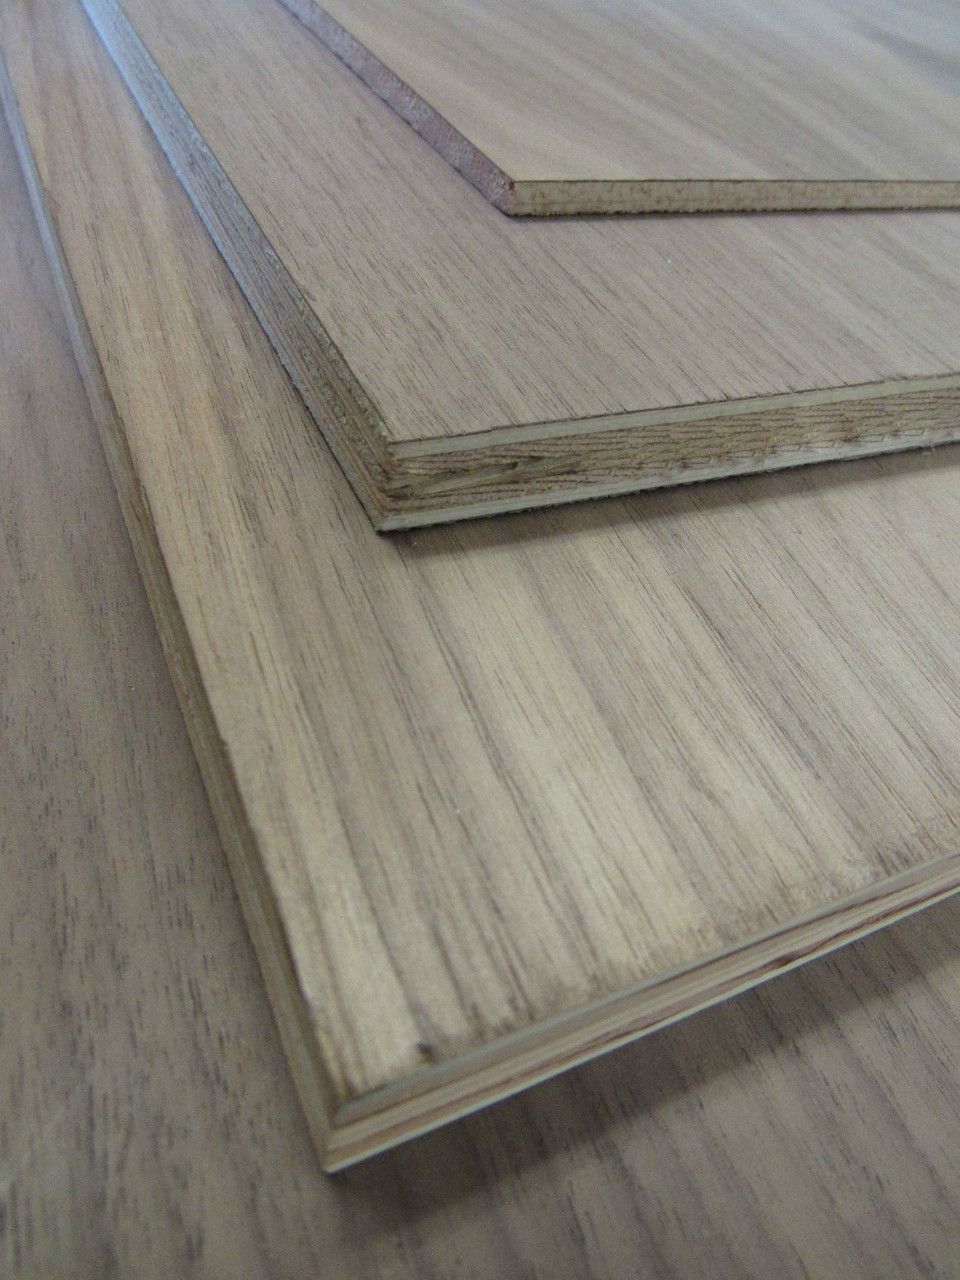 Walnut Plywood Full Sheets 48x96 (4' x 8')